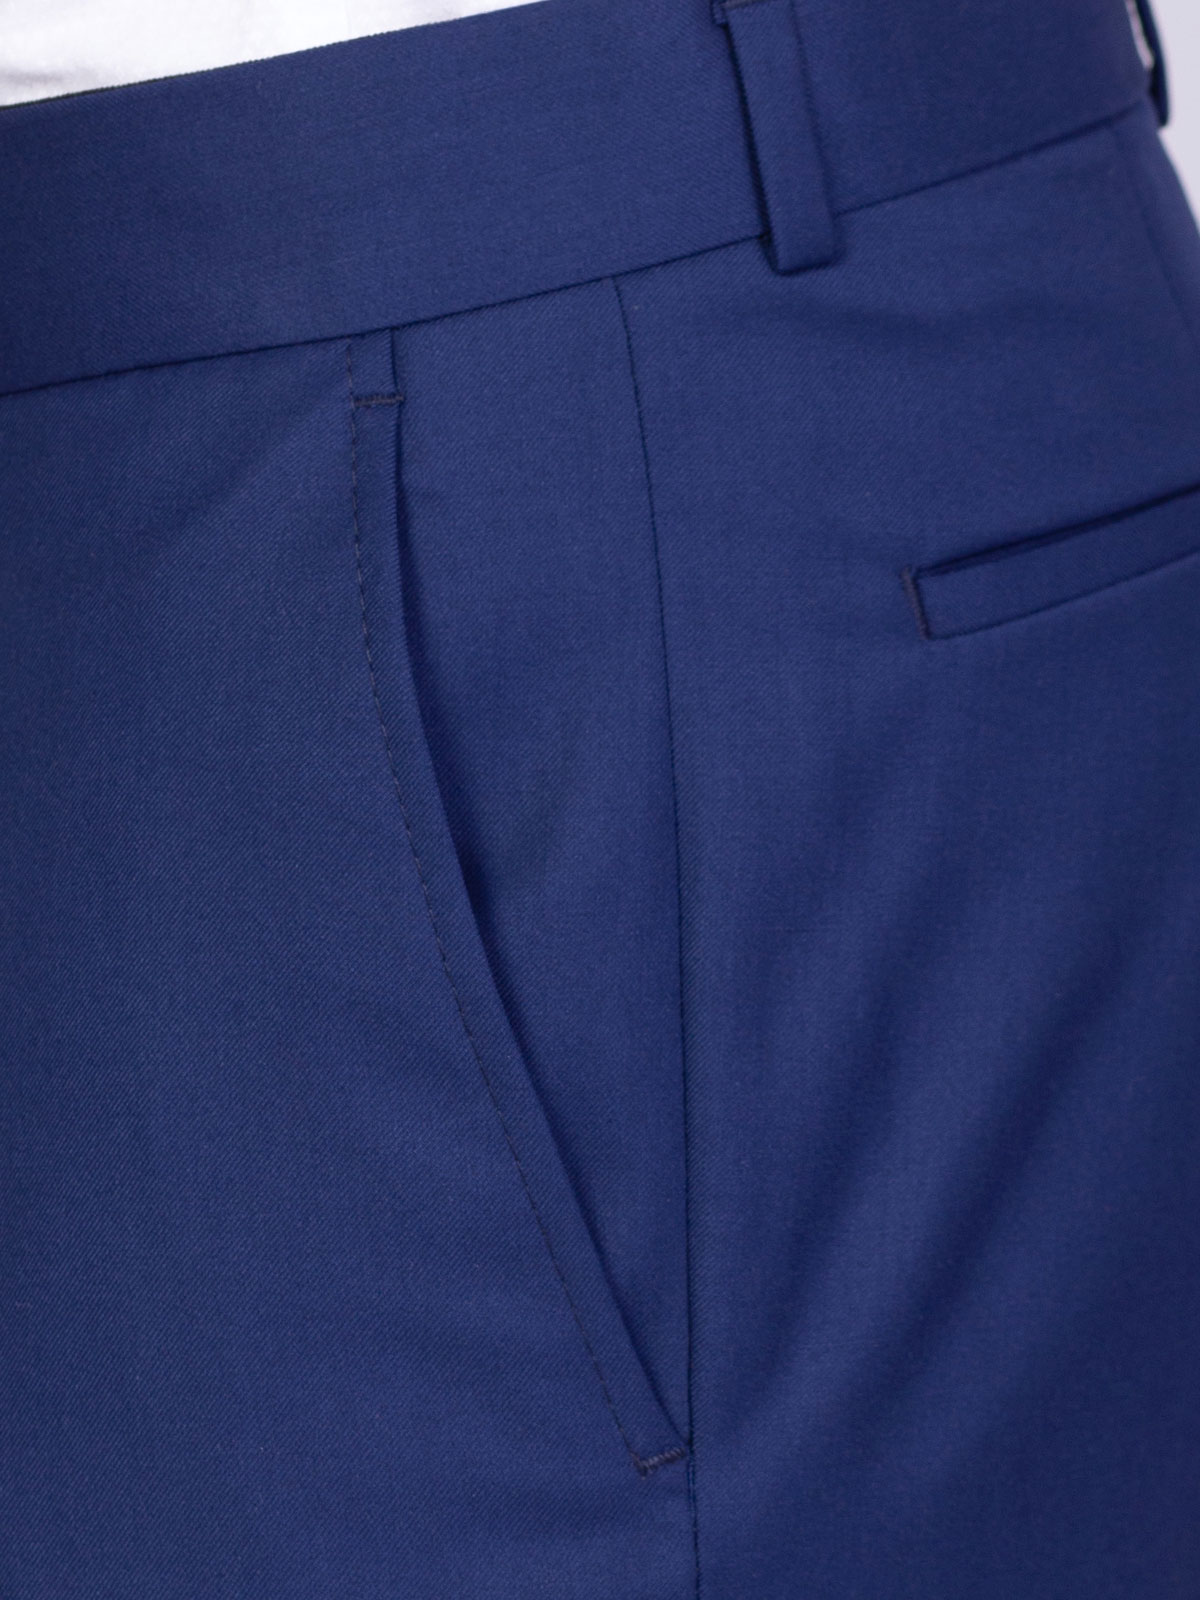 Класически мъжки панталон в синьо - 63330 108.00 лв img3